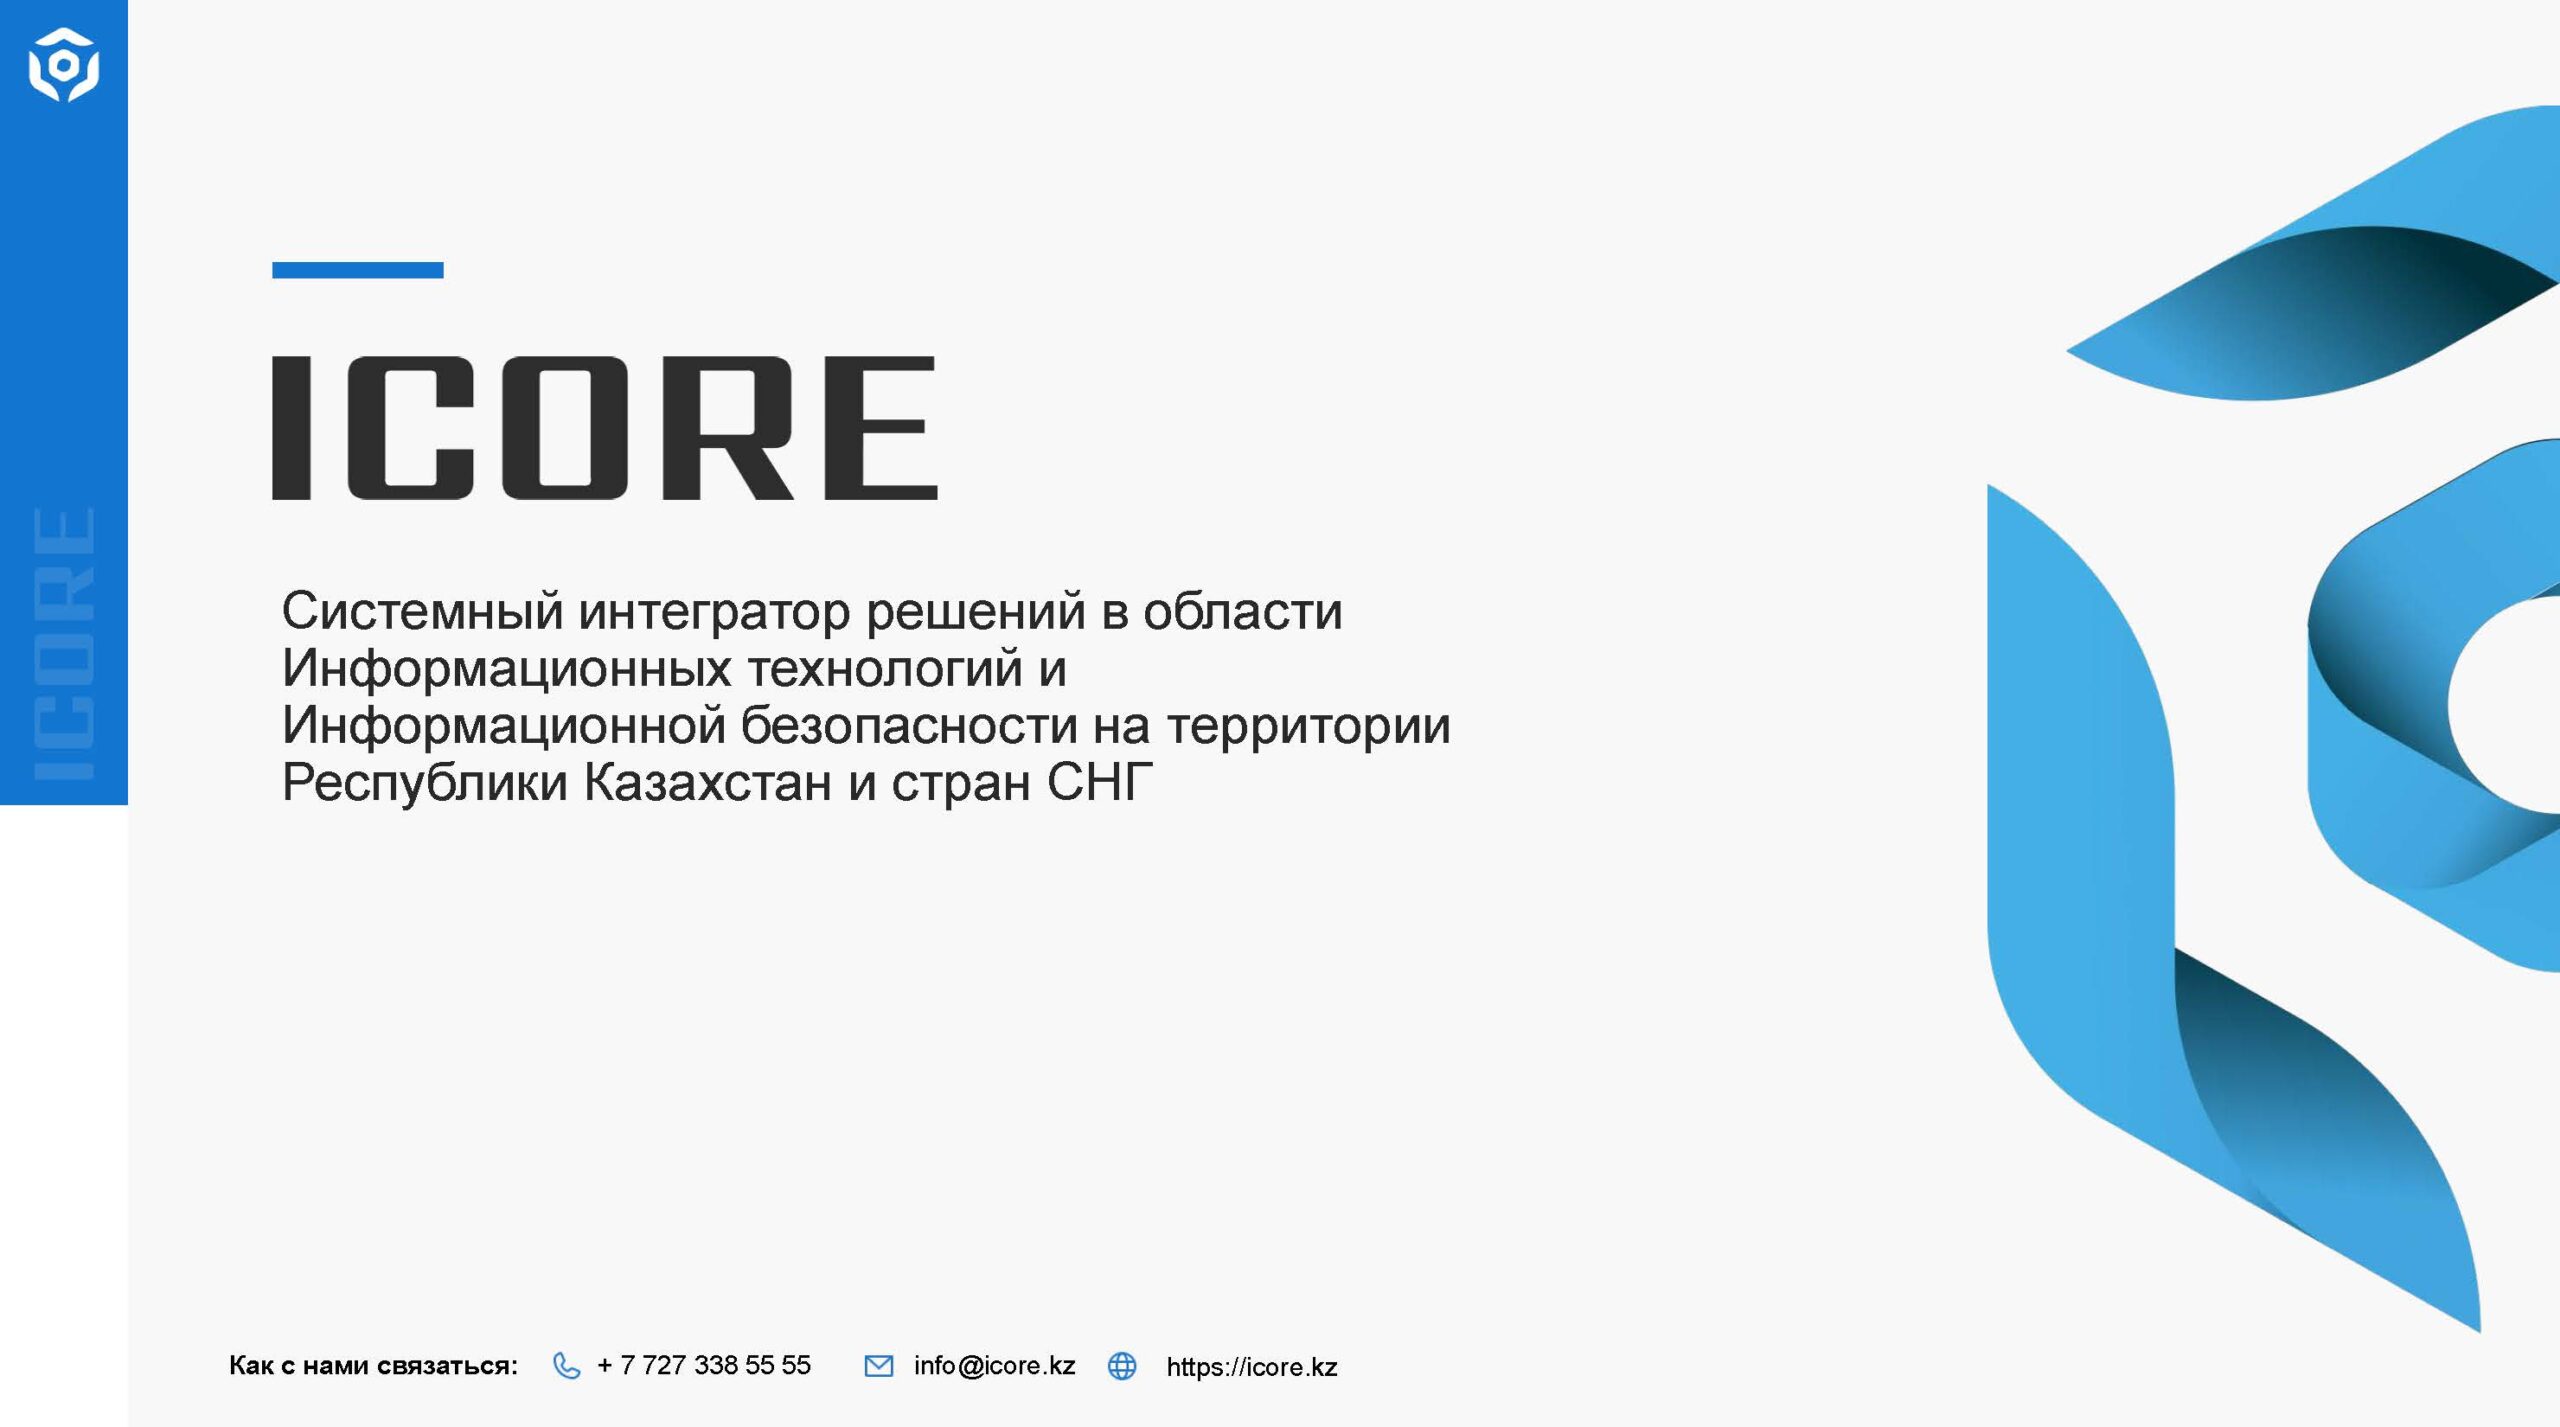 Презентация ICORE - ICORE (1)